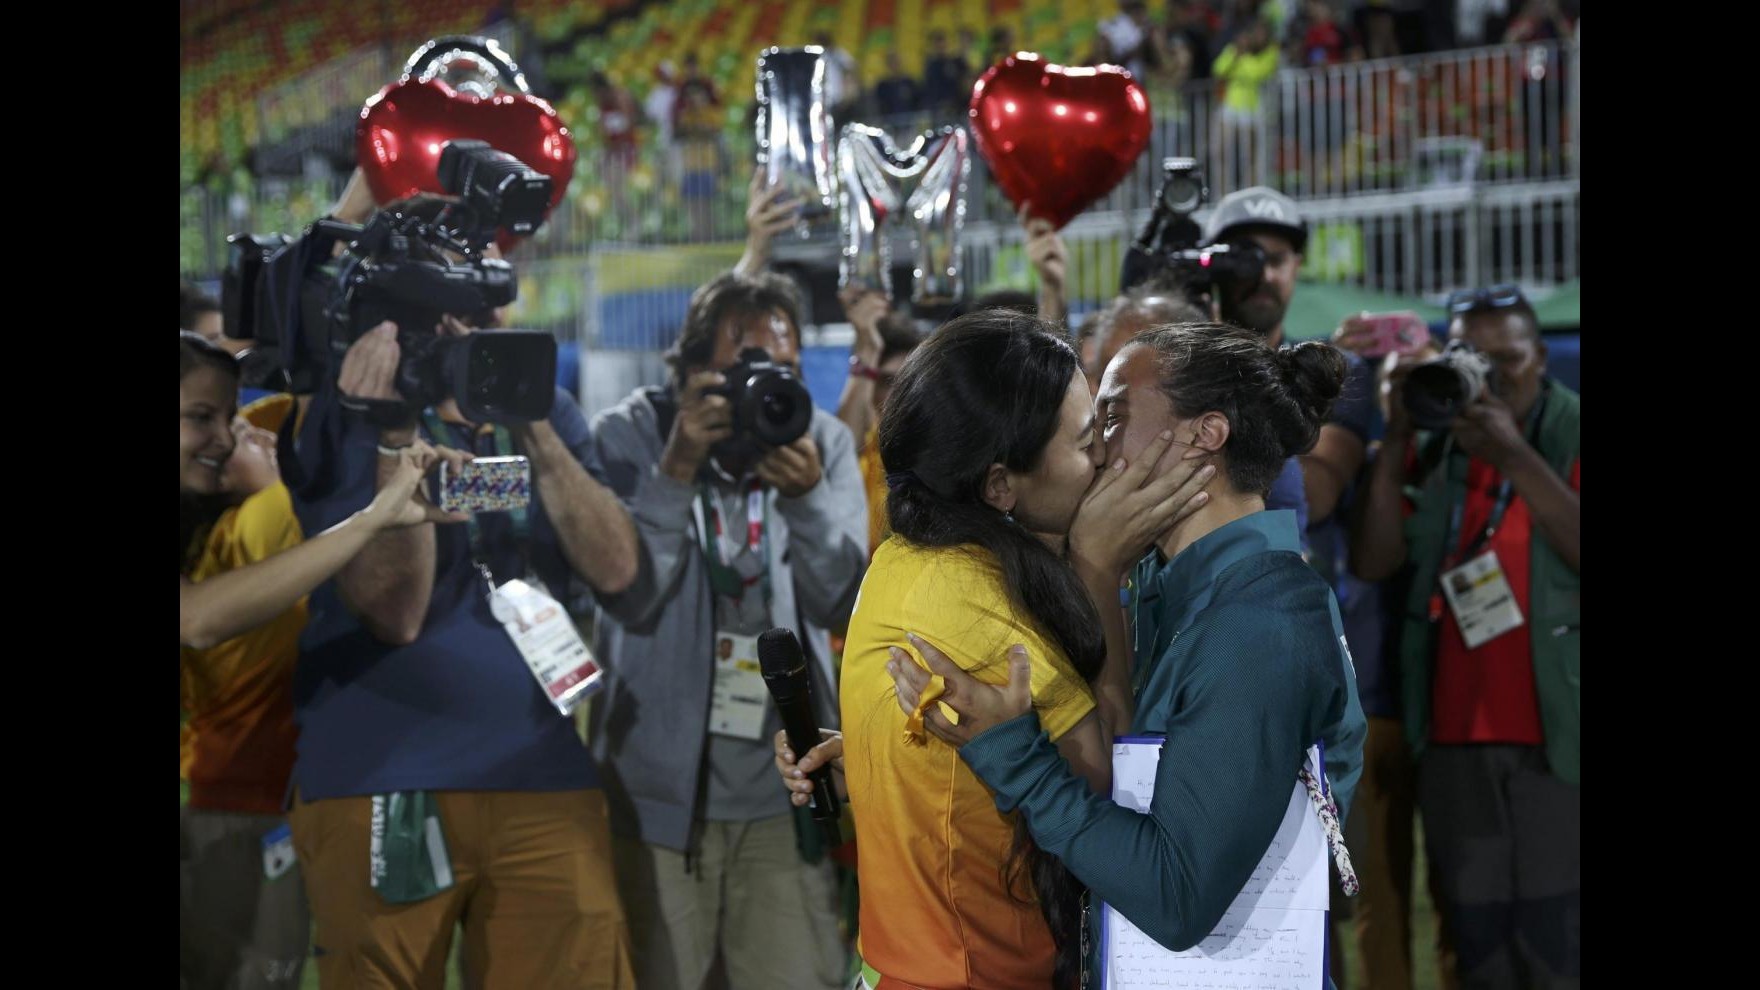 FOTO Rio, amore e matrimoni ai Giochi